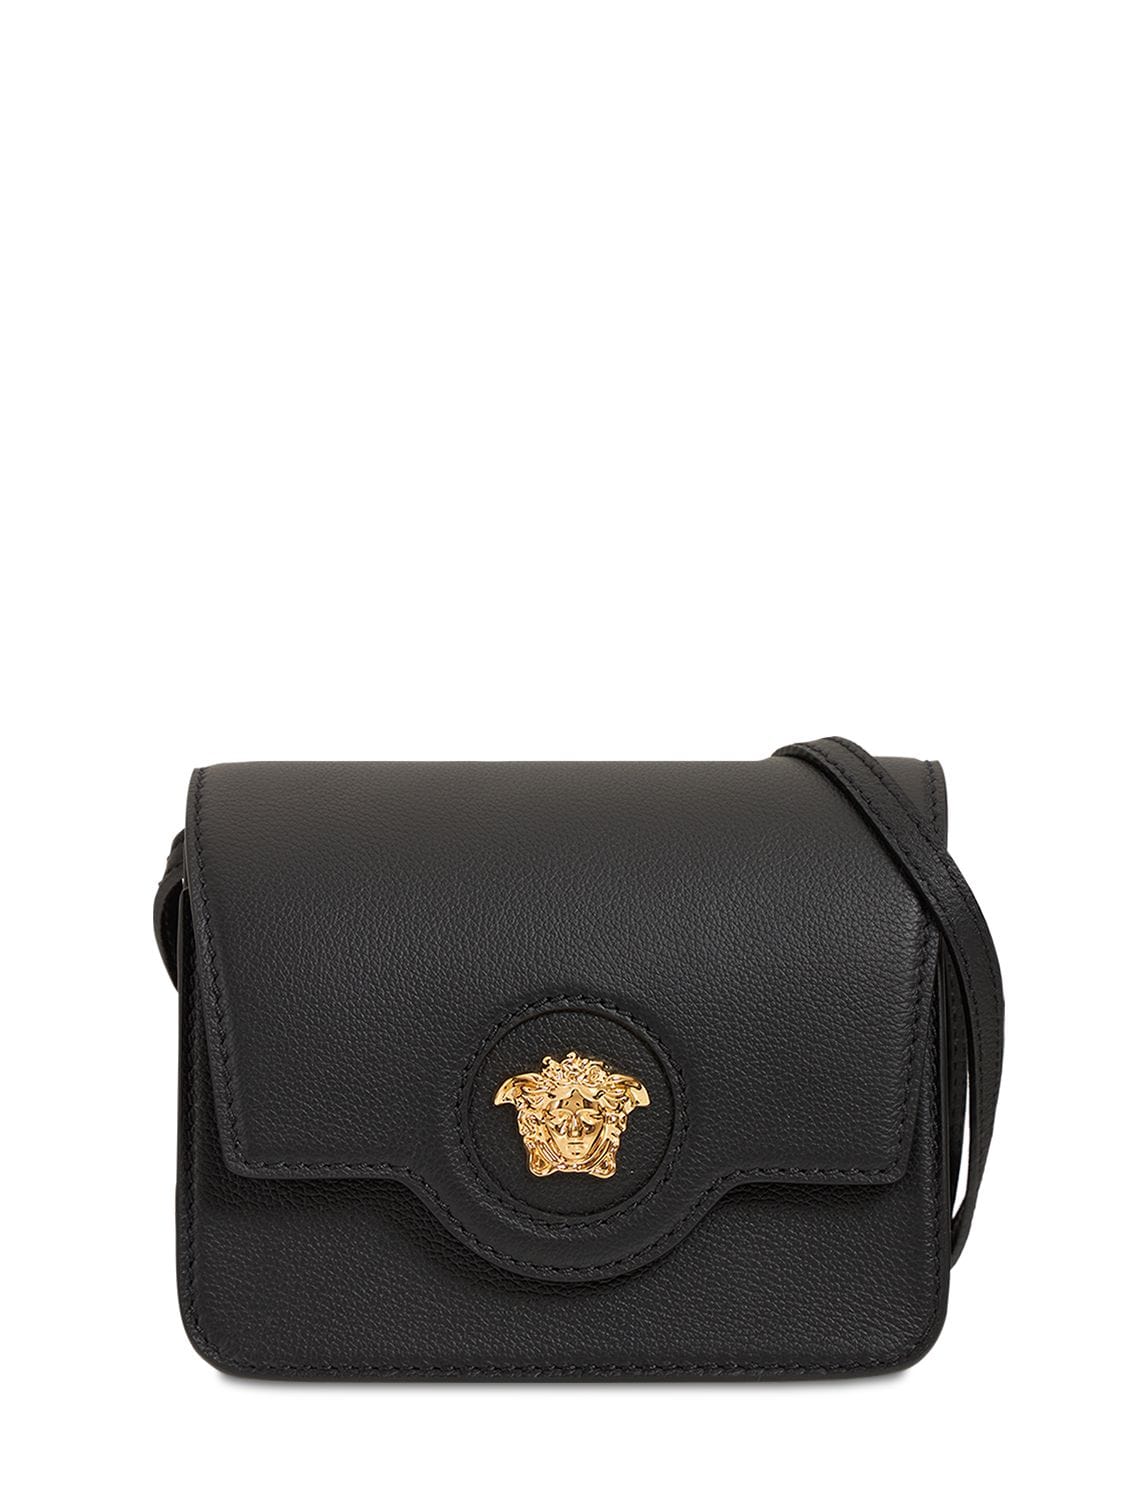 Versace Medusa Leather Shoulder Bag In Black